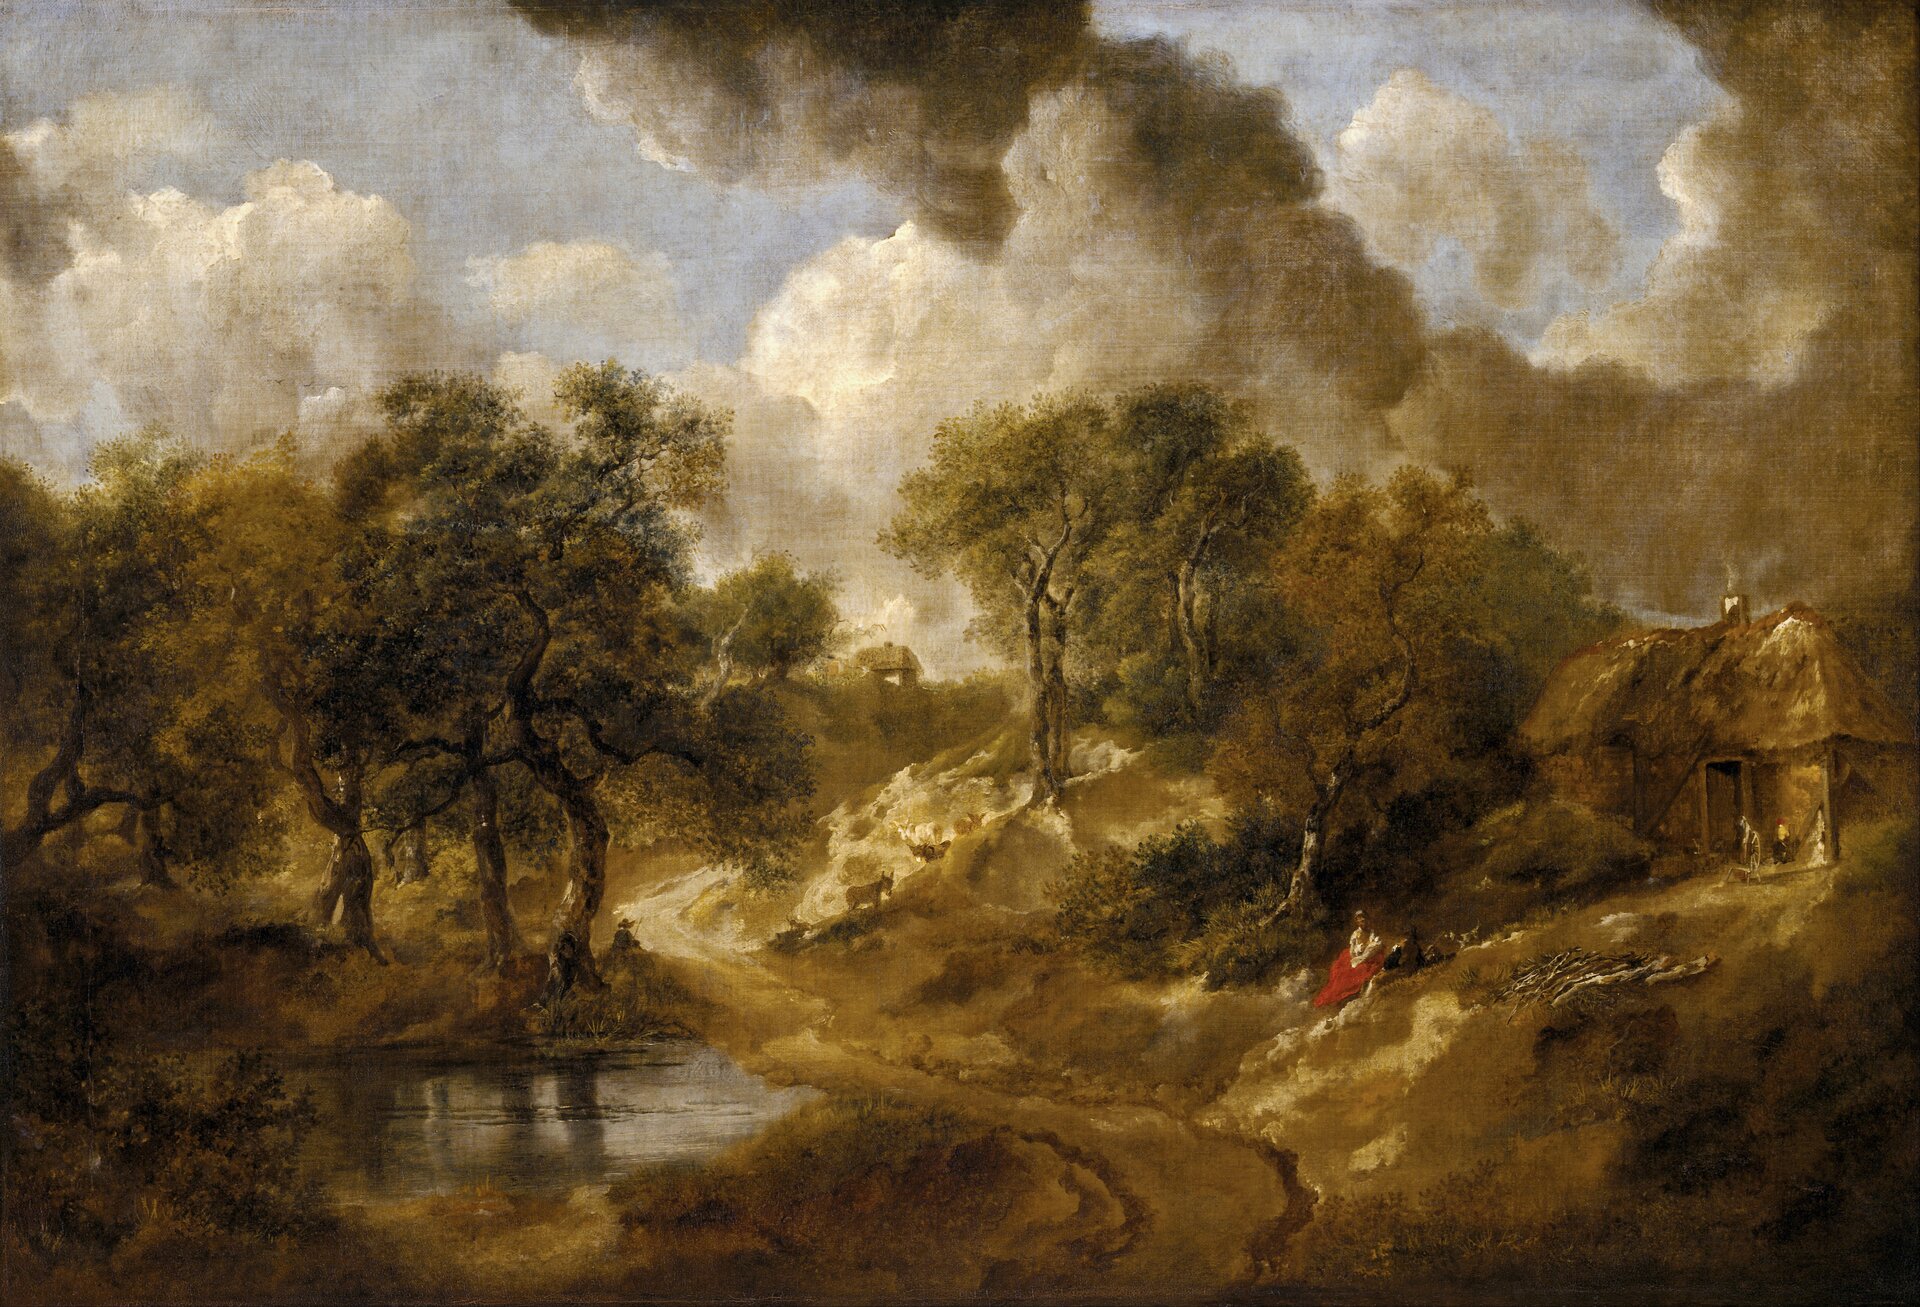 Ilustracja przedstawia obraz „Pejzaż Suffolk” autorstwa Thomas Gainsborough. Obraz ukazuje pejzaż hrabstwa Suffolk. Widoczna jest droga polna. PO jej prawej stronie jest łąka, na której siedzą postaci, za nimi stoi dom wiejski. Po prawej lewej stronie obrazu widoczny jest staw oraz drzewa i krzewy. Na niebie są gęste, kłębiaste chmury.